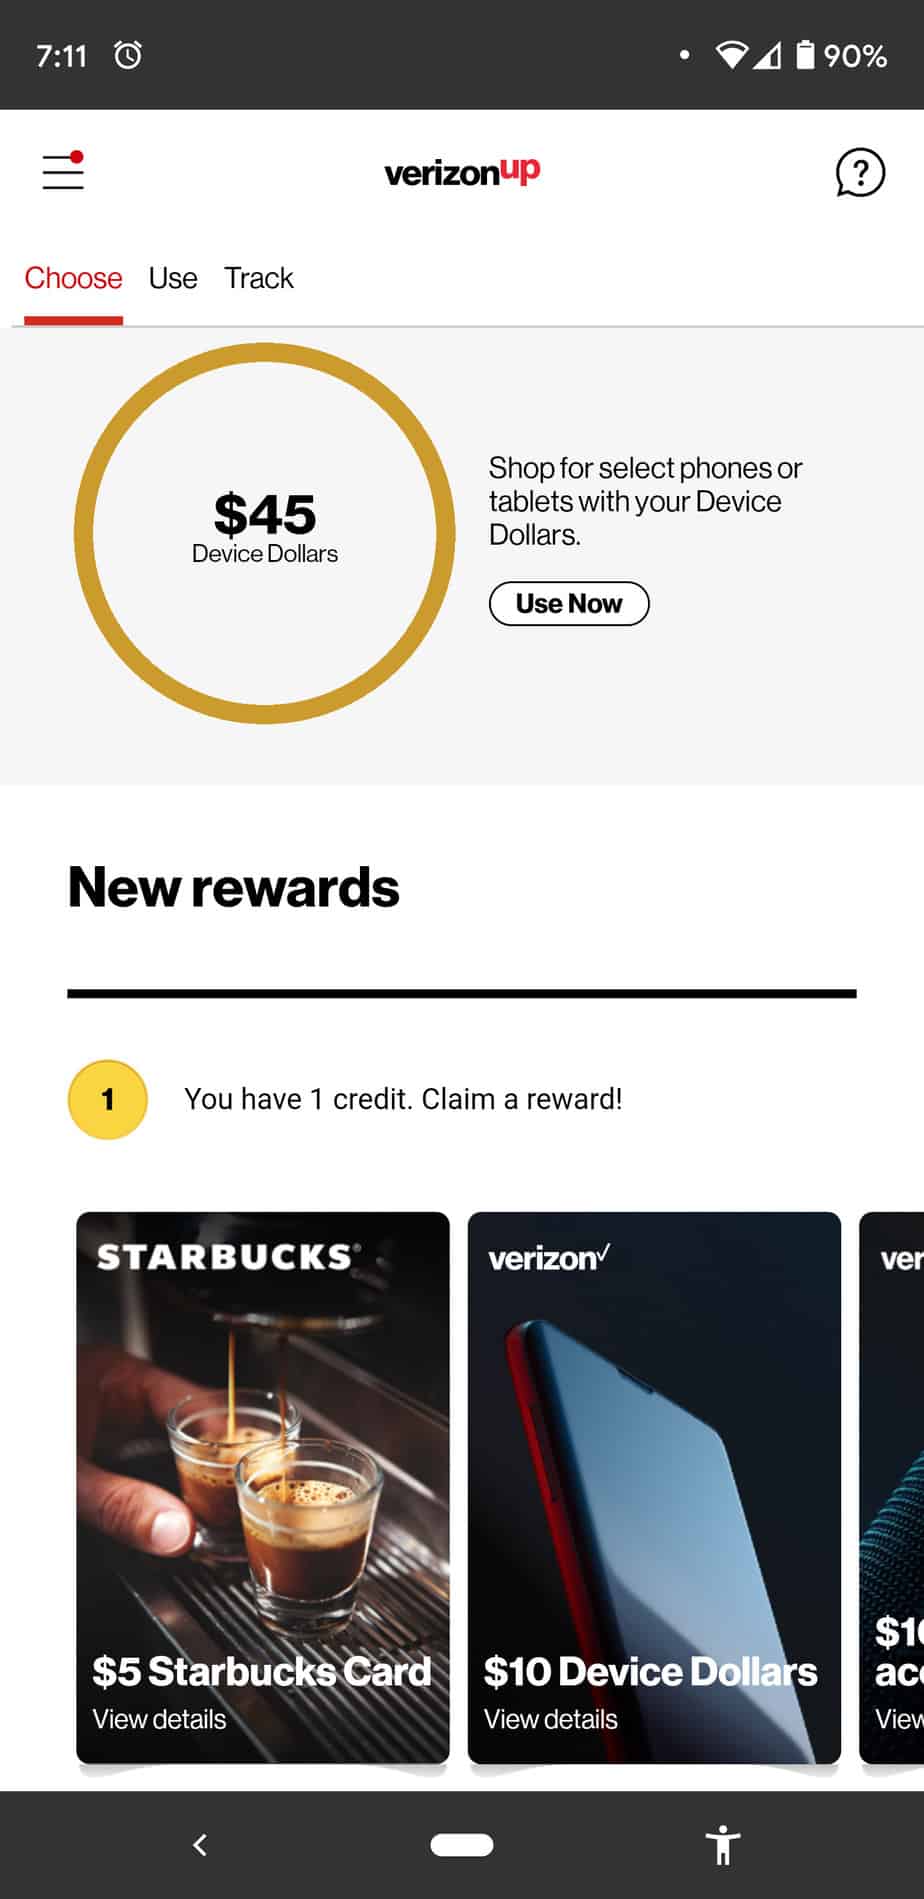 Verizon UP Rewards